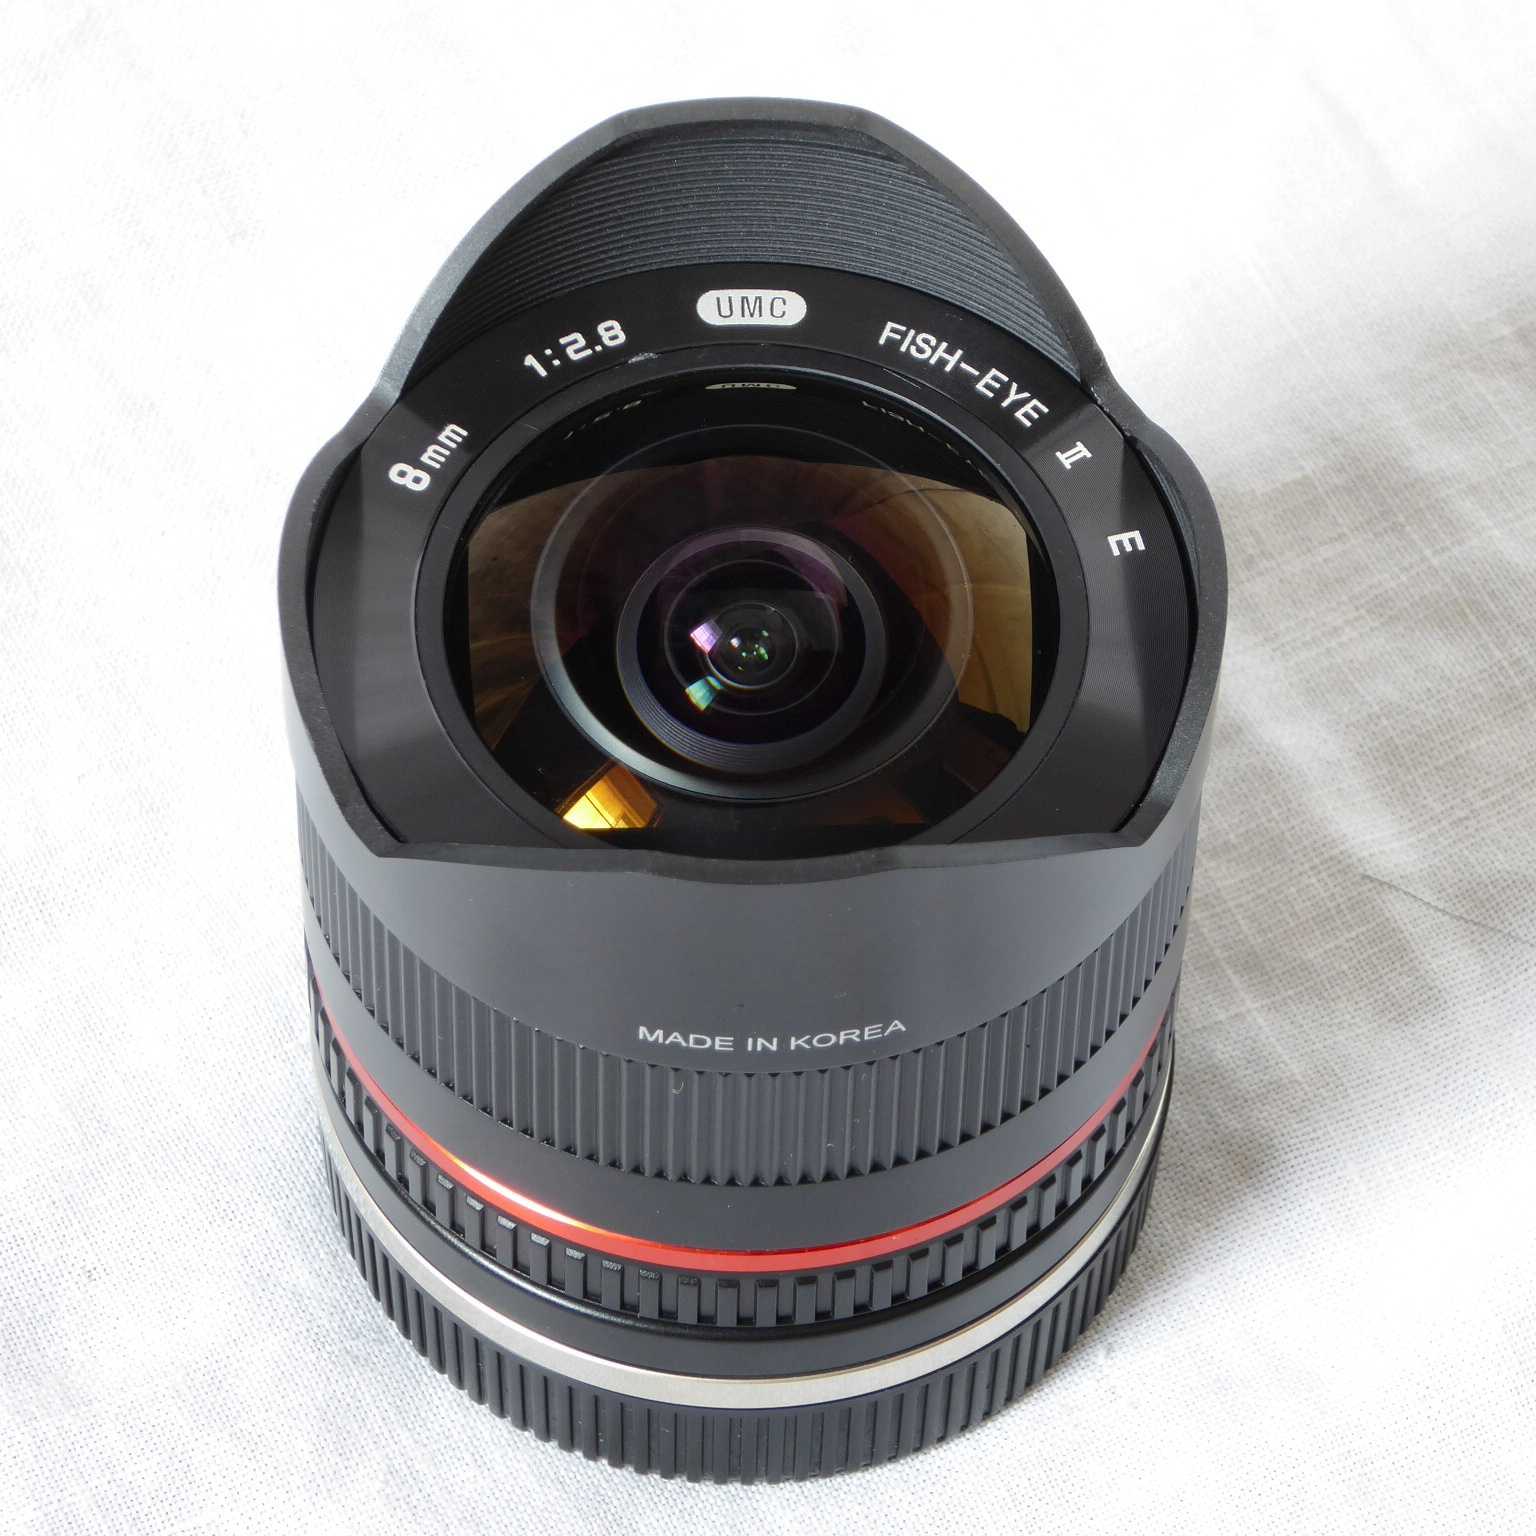 Объектив Samyang 8mm F35 Aspherical IF MC Fisheye - подробные характеристики обзоры видео фото Цены в интернет-магазинах где можно купить объектив Samyang 8mm F35 Aspherical IF MC Fisheye